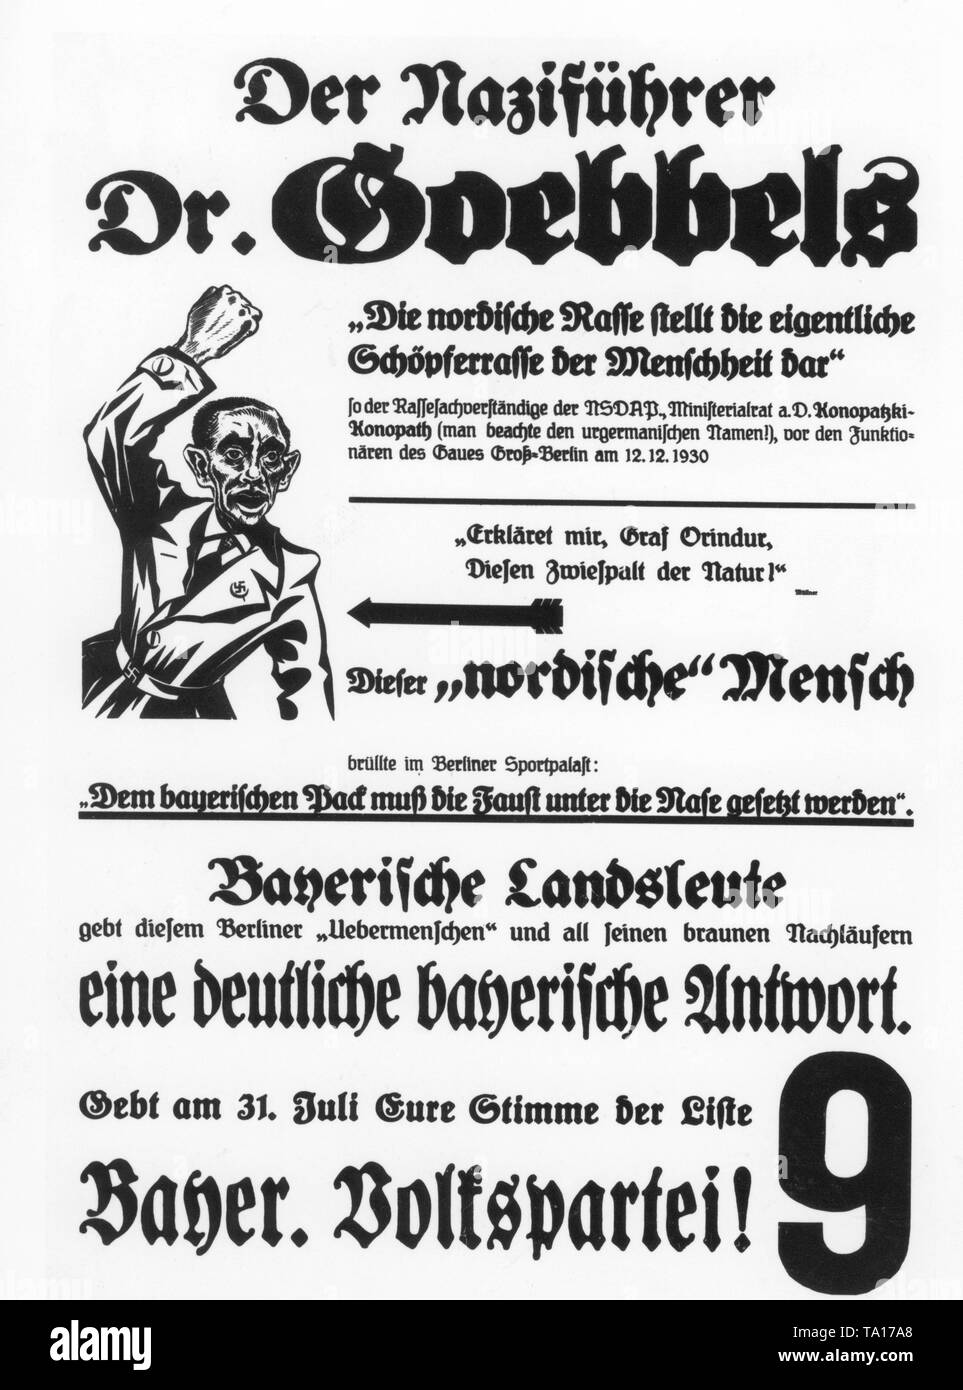 Un cartellone elettorale della bavarese del Partito popolare dal 1932 milita contro "leader nazista Dr. Goebbles' e l'anti-bavarese dichiarazioni rilasciate in un discorso a Berlino Sportpalast. Foto Stock